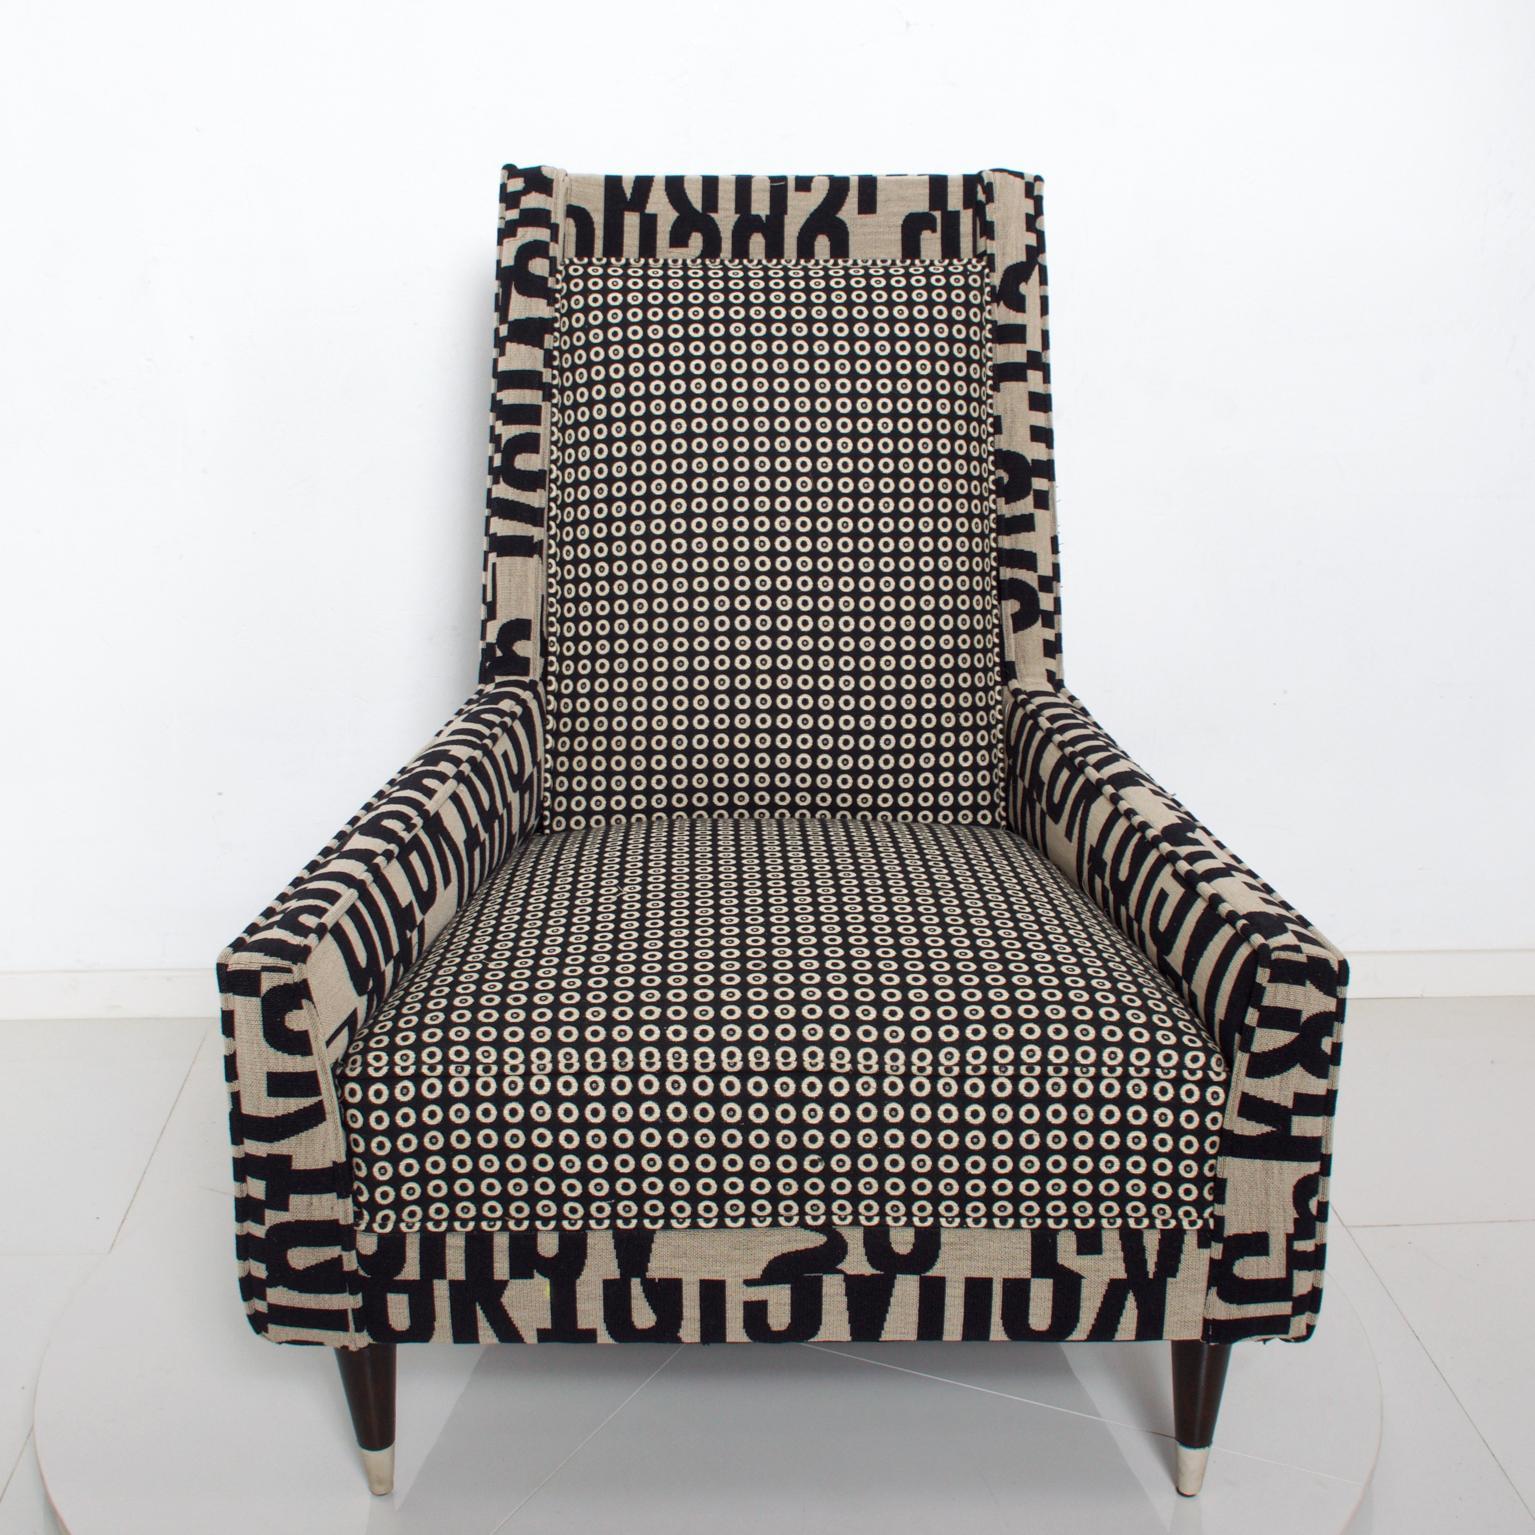 Modern Gio Ponti Style by Arturo Pani Wild Wingback Lounge Chairs Midcentury Pair 1969